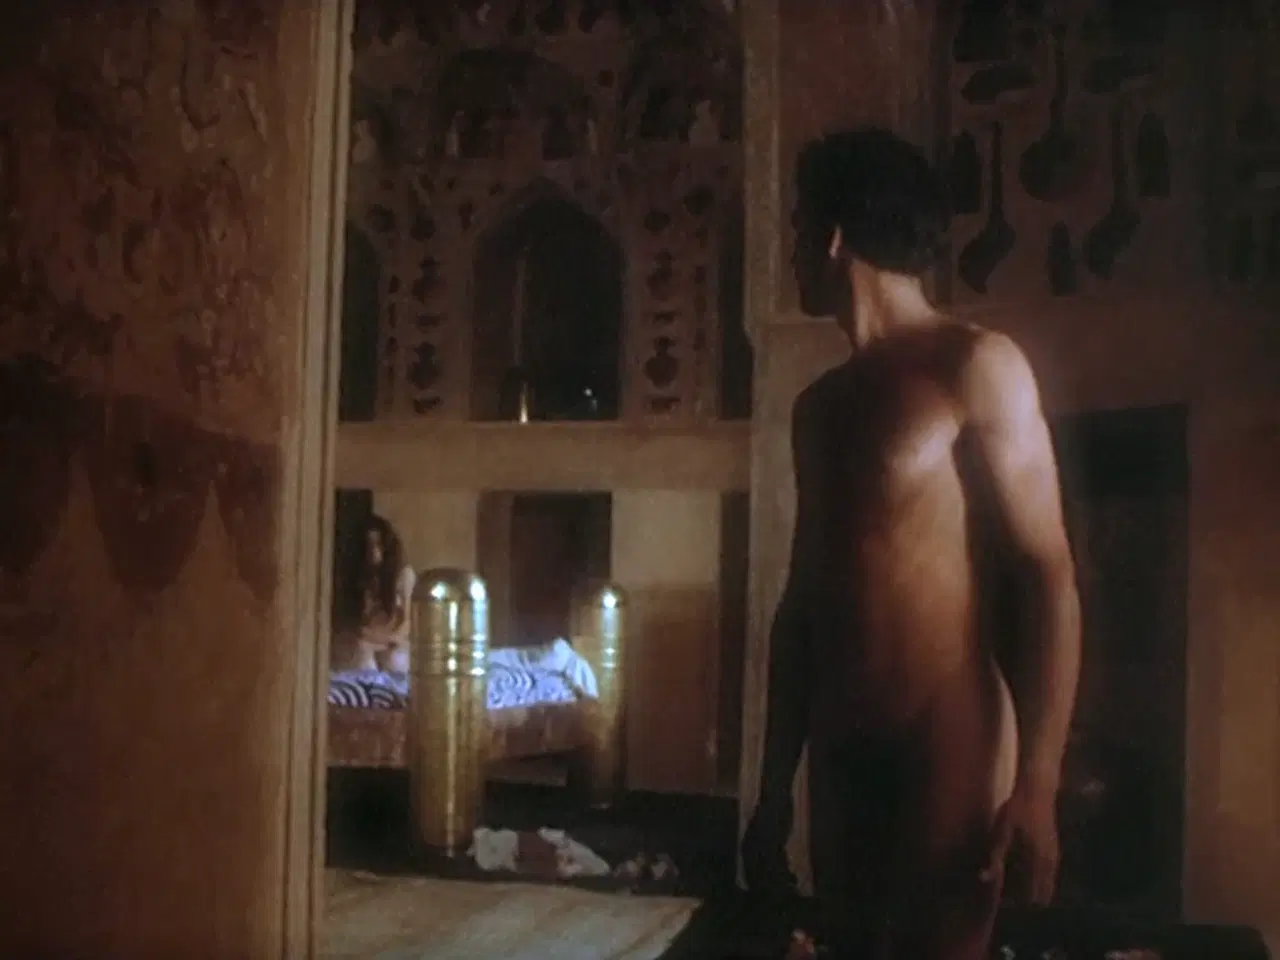 Billede 5 - Pasolinis "Tusind og en nat" (1974)